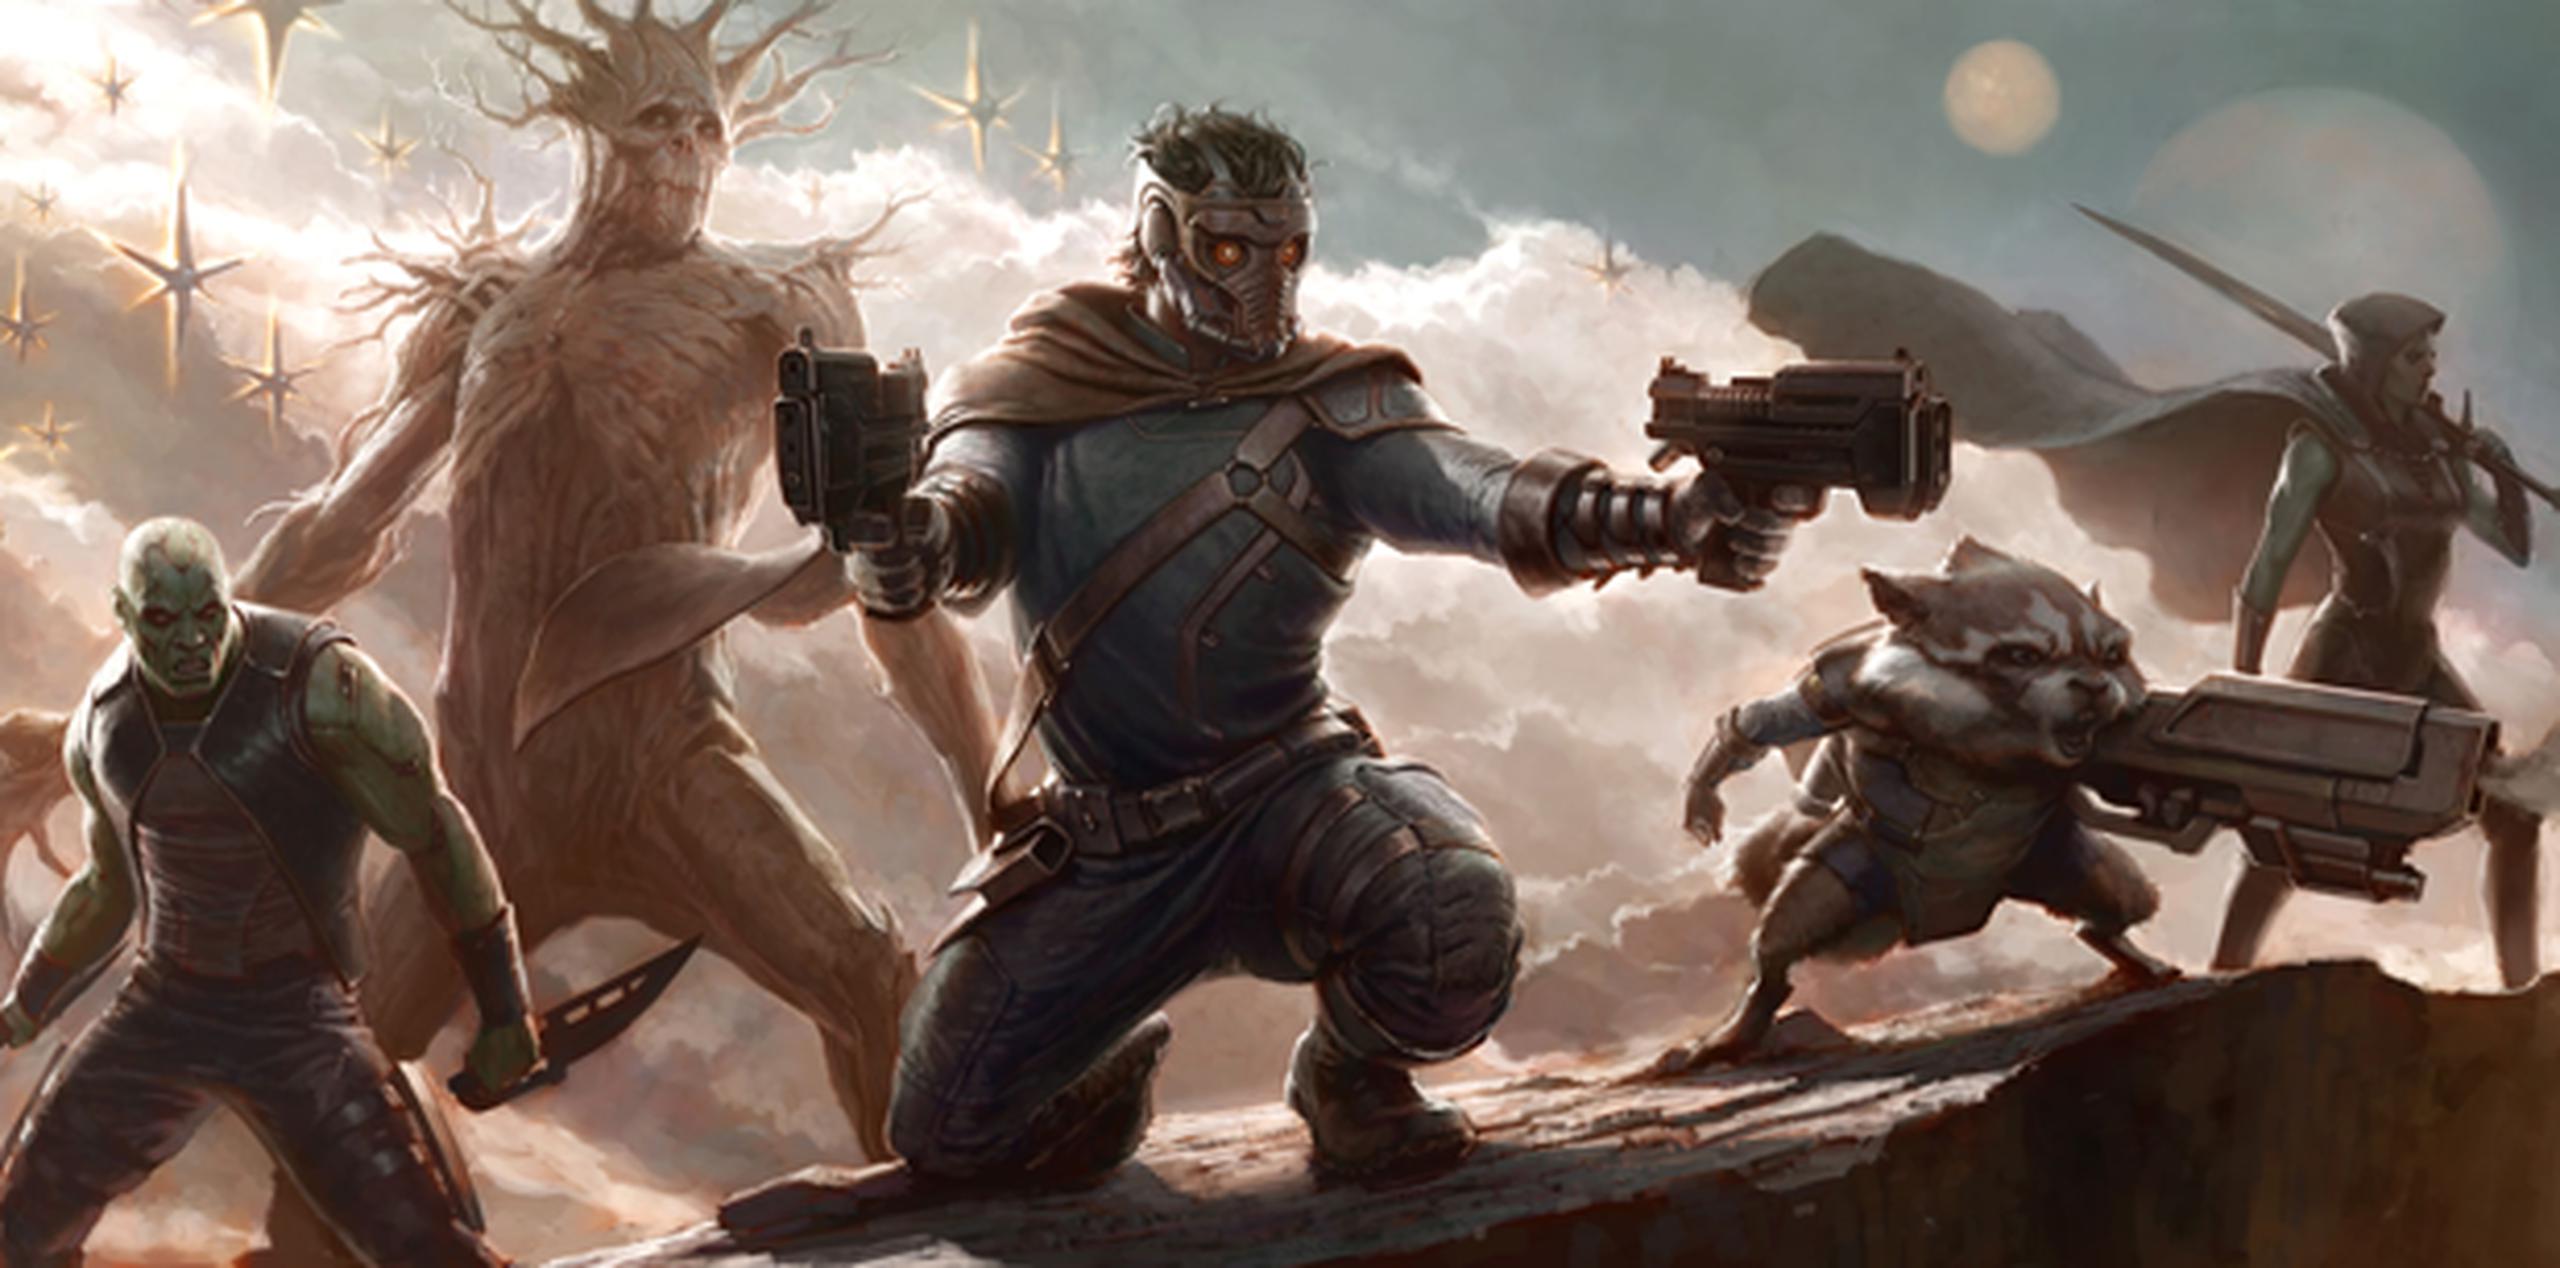 El filme Guardians of the Galaxy, con el que Marvel Studios introducirá un nuevo equipo de superhéroes, es una de las principales apuestas del 2014.